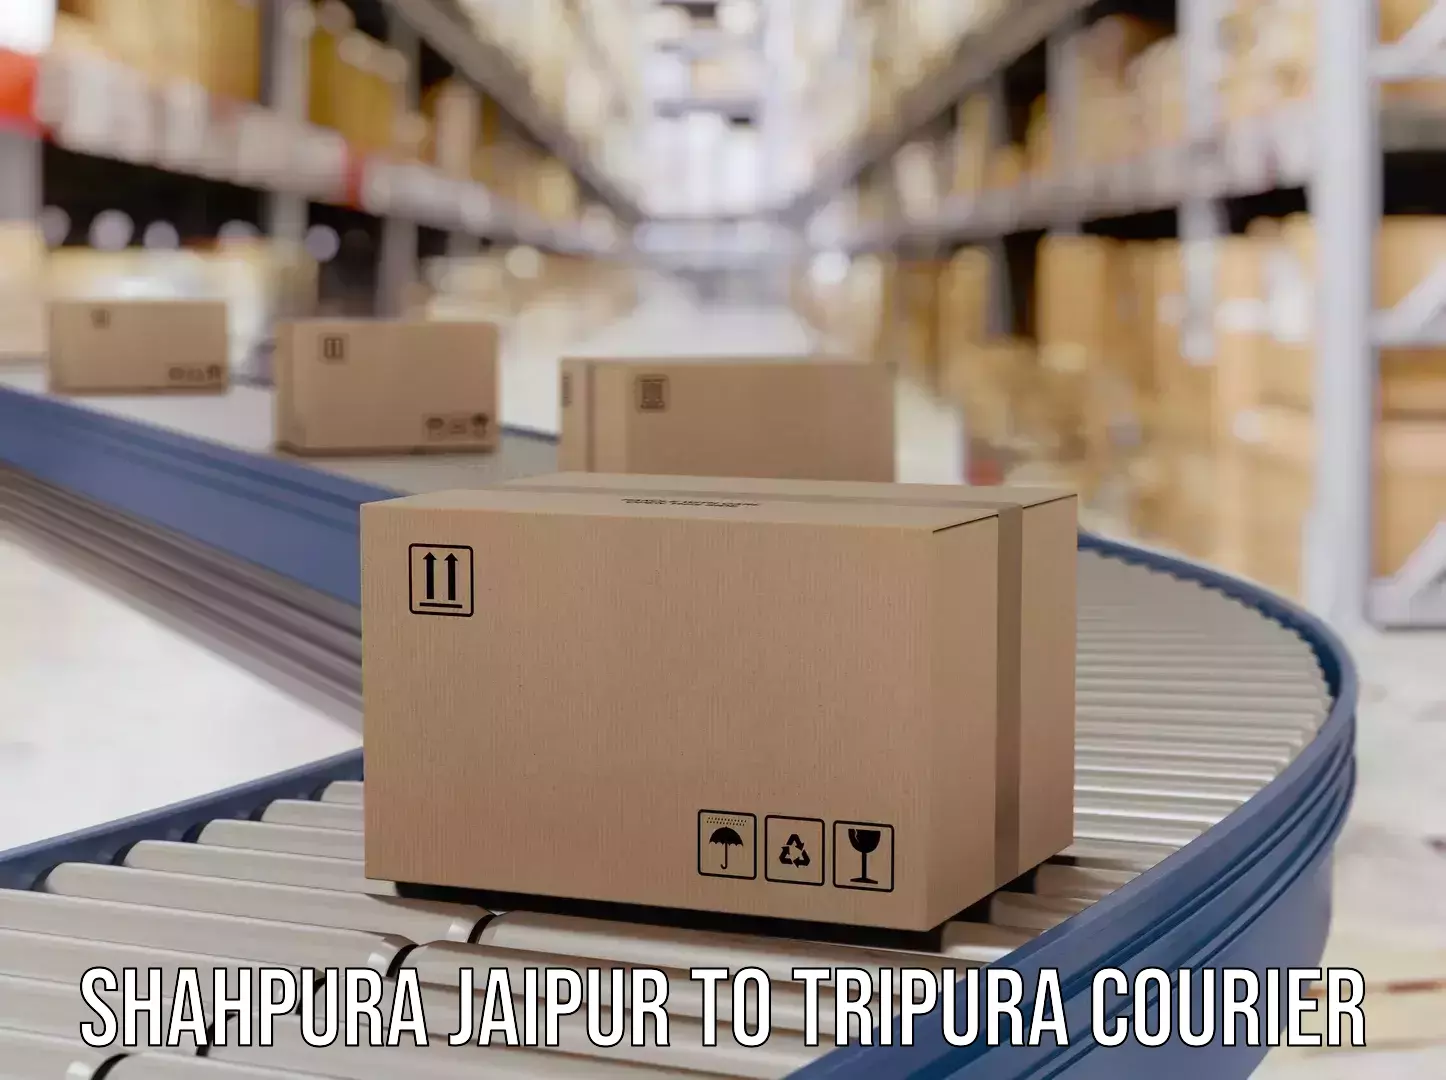 Return courier service Shahpura Jaipur to Udaipur Tripura